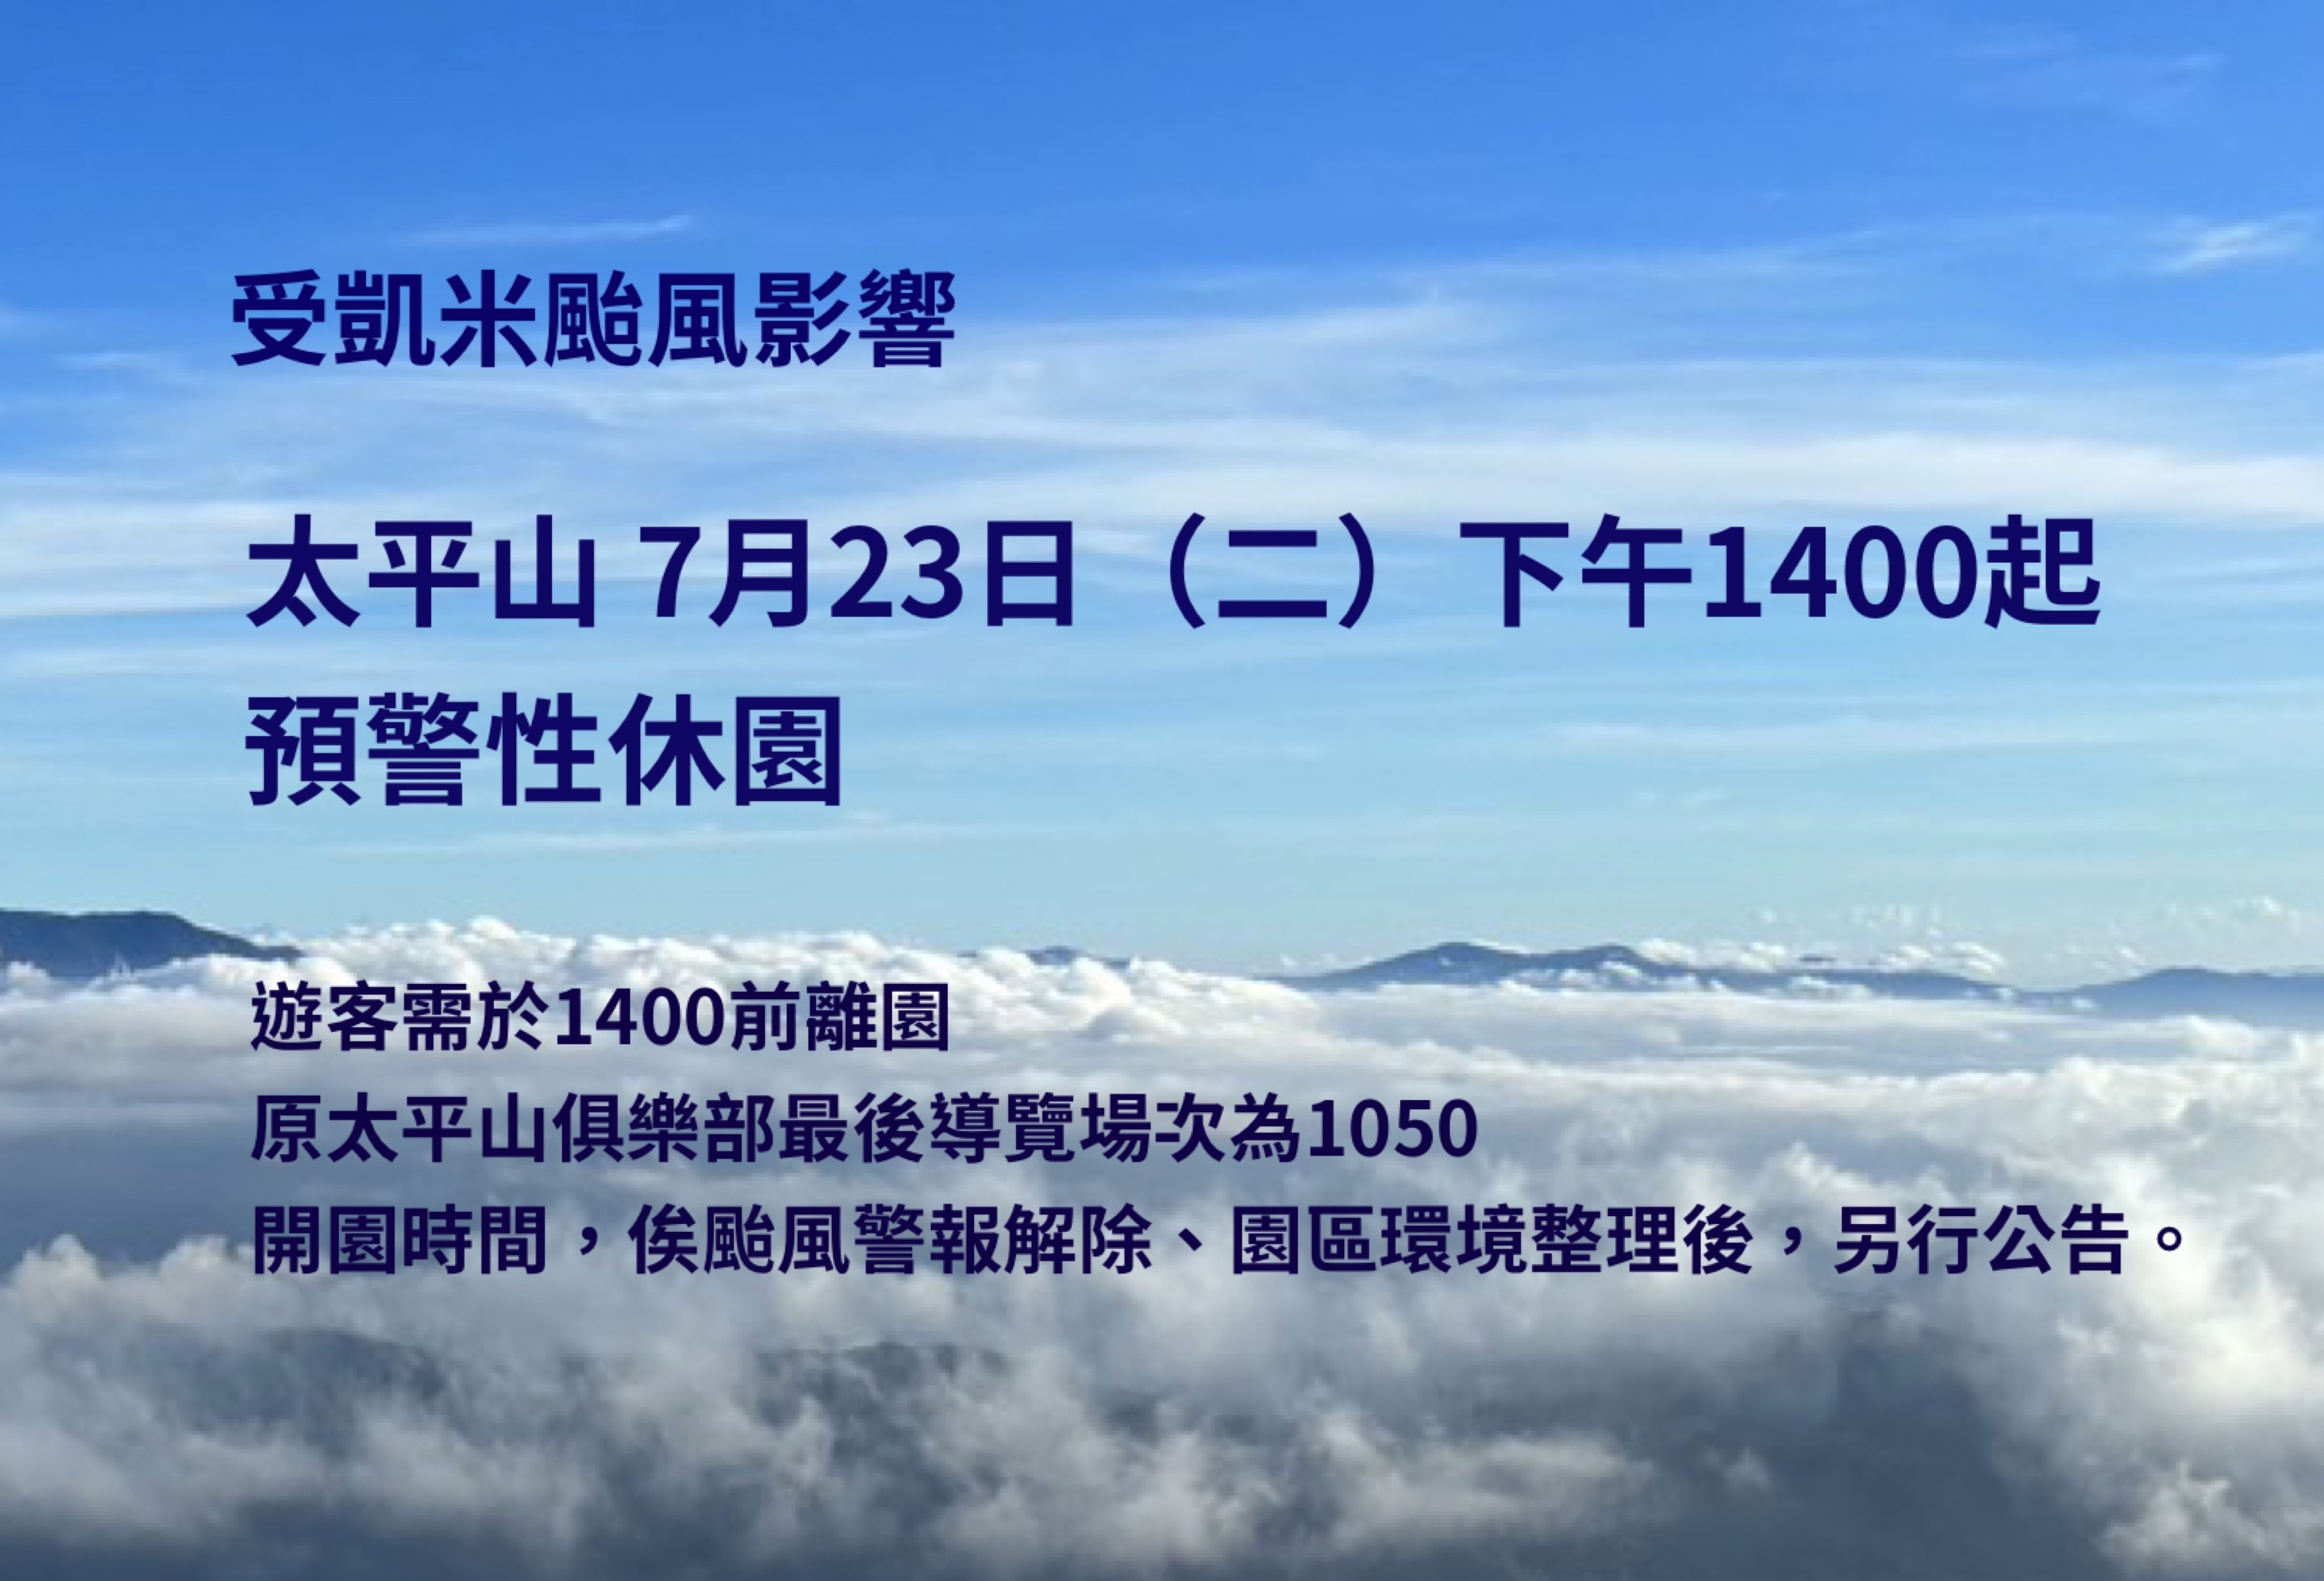 受凱米颱風影響太平山7月23日下午14時起預警性休園